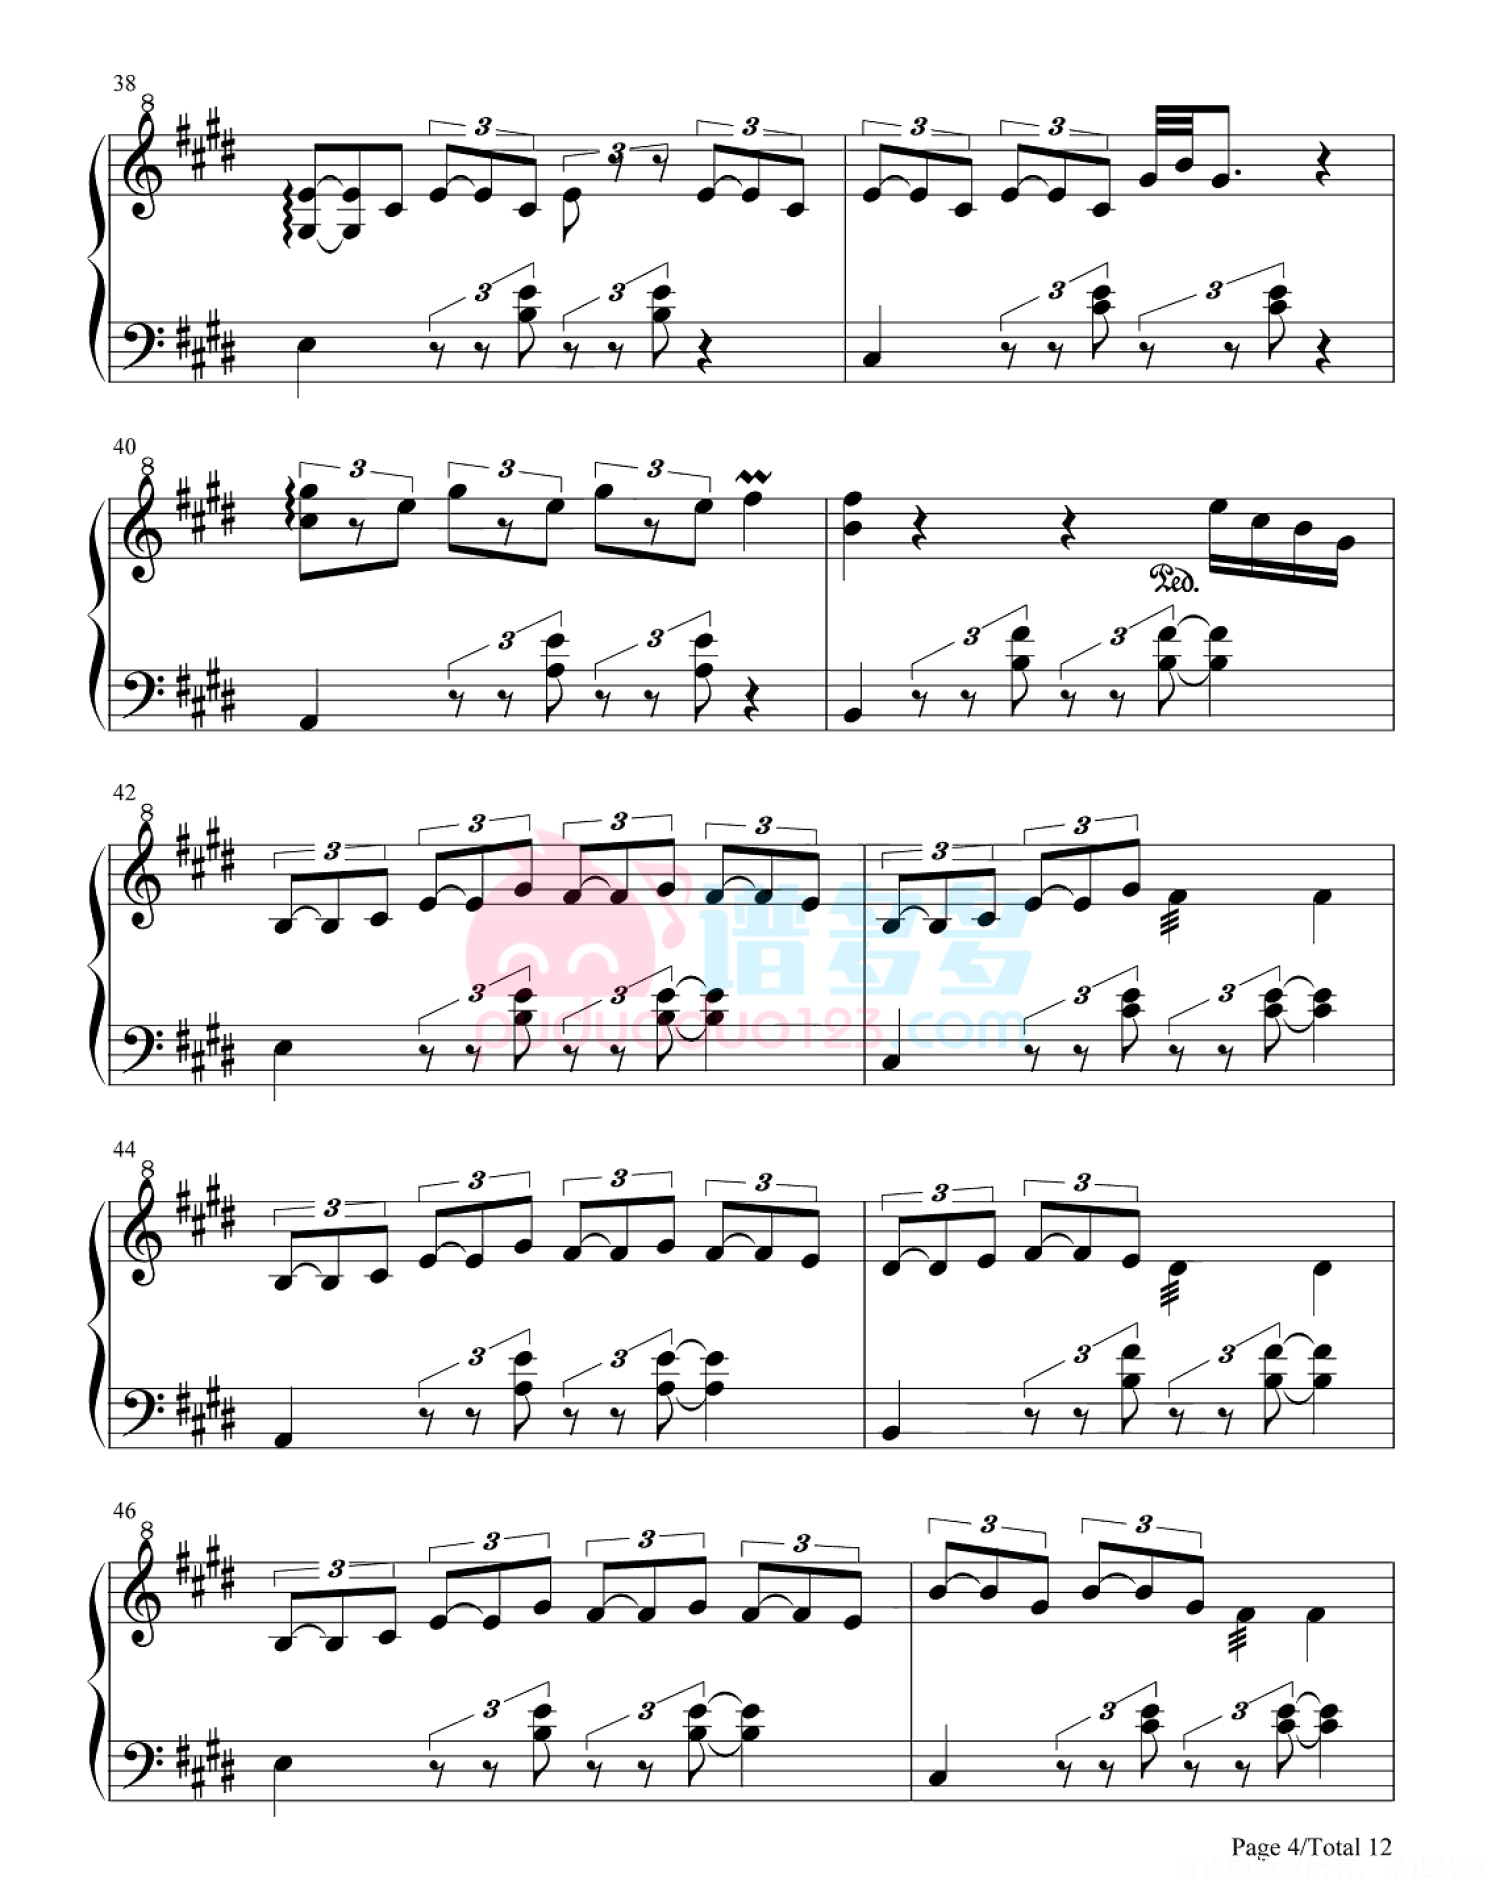 简单版《苦茶子》钢琴谱 - Starling8/Morlearn 270基础钢琴简谱 - 高清谱子图片 - 钢琴简谱